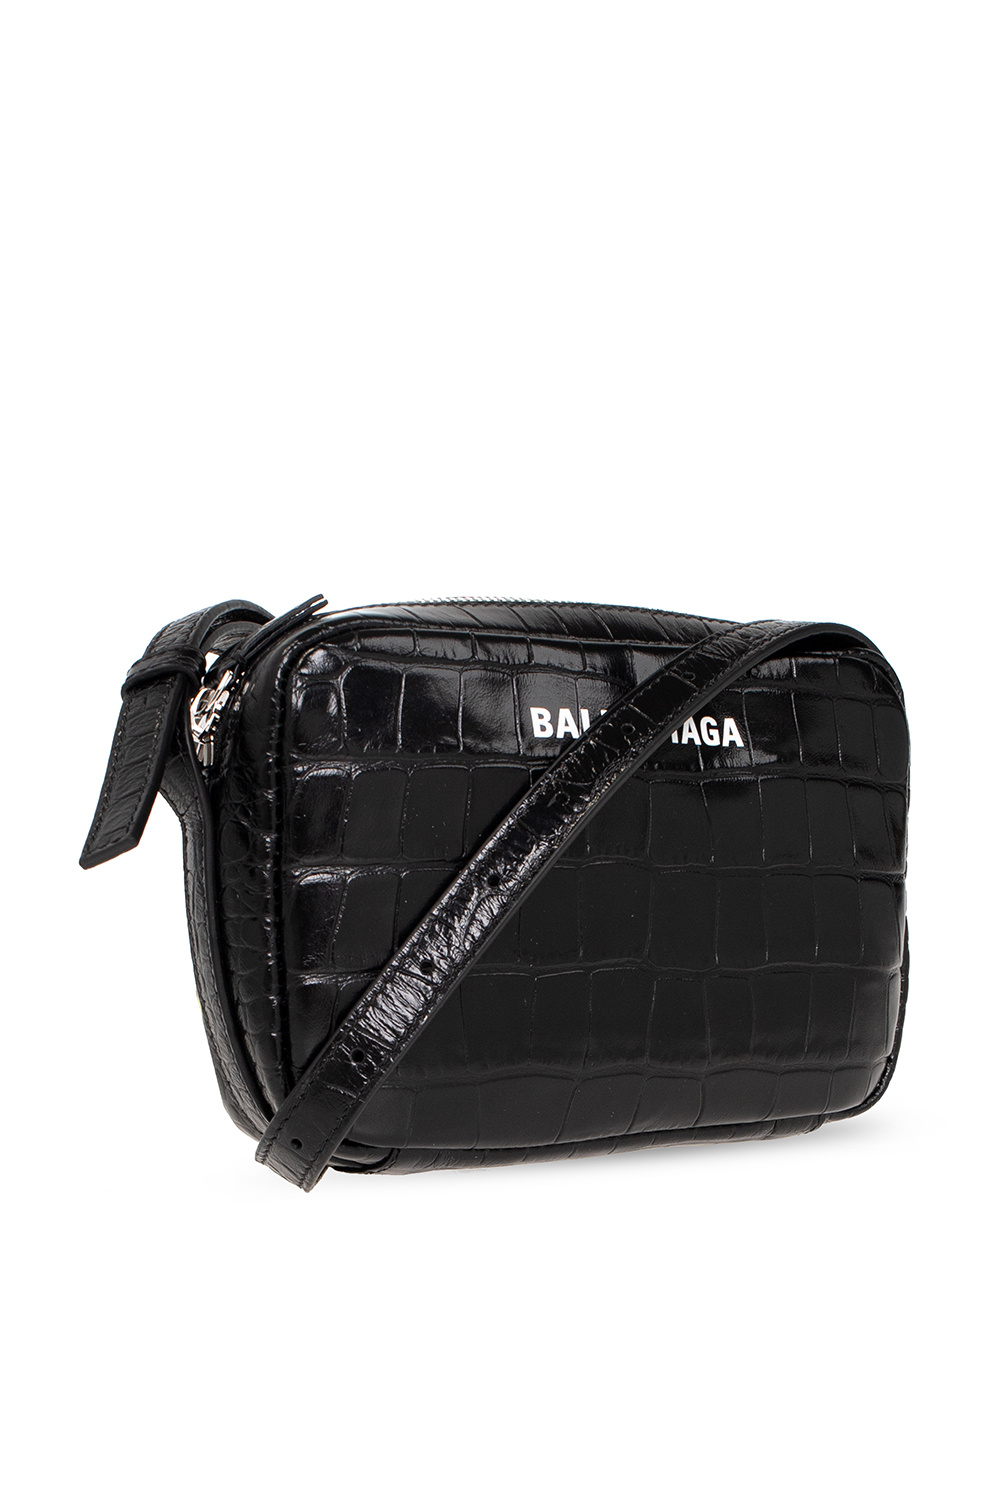 Balenciaga ‘Everyday Small’ shoulder bag